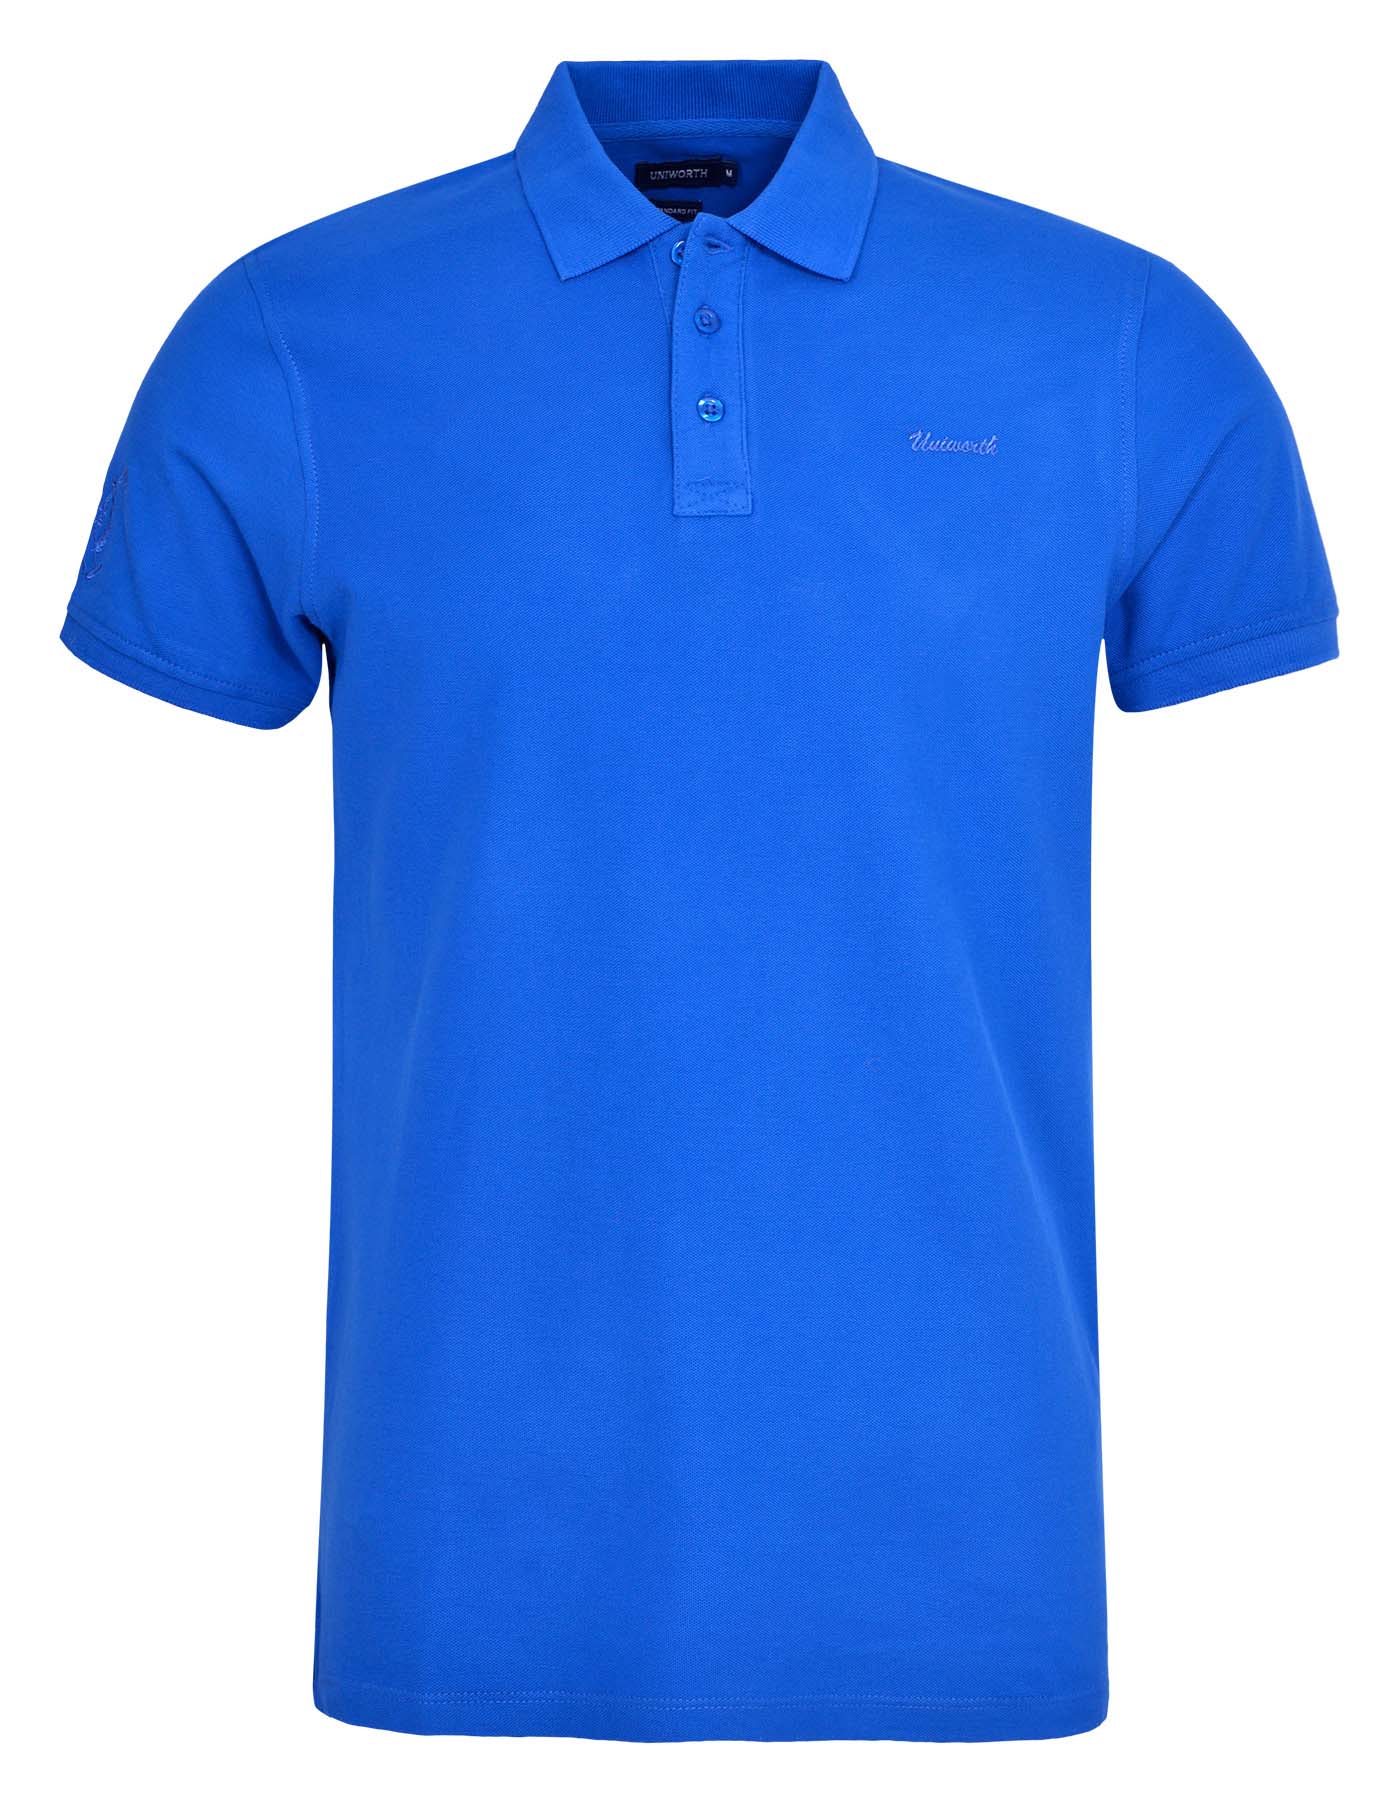 Plain Royal Blue Half Sleeves T-shirt